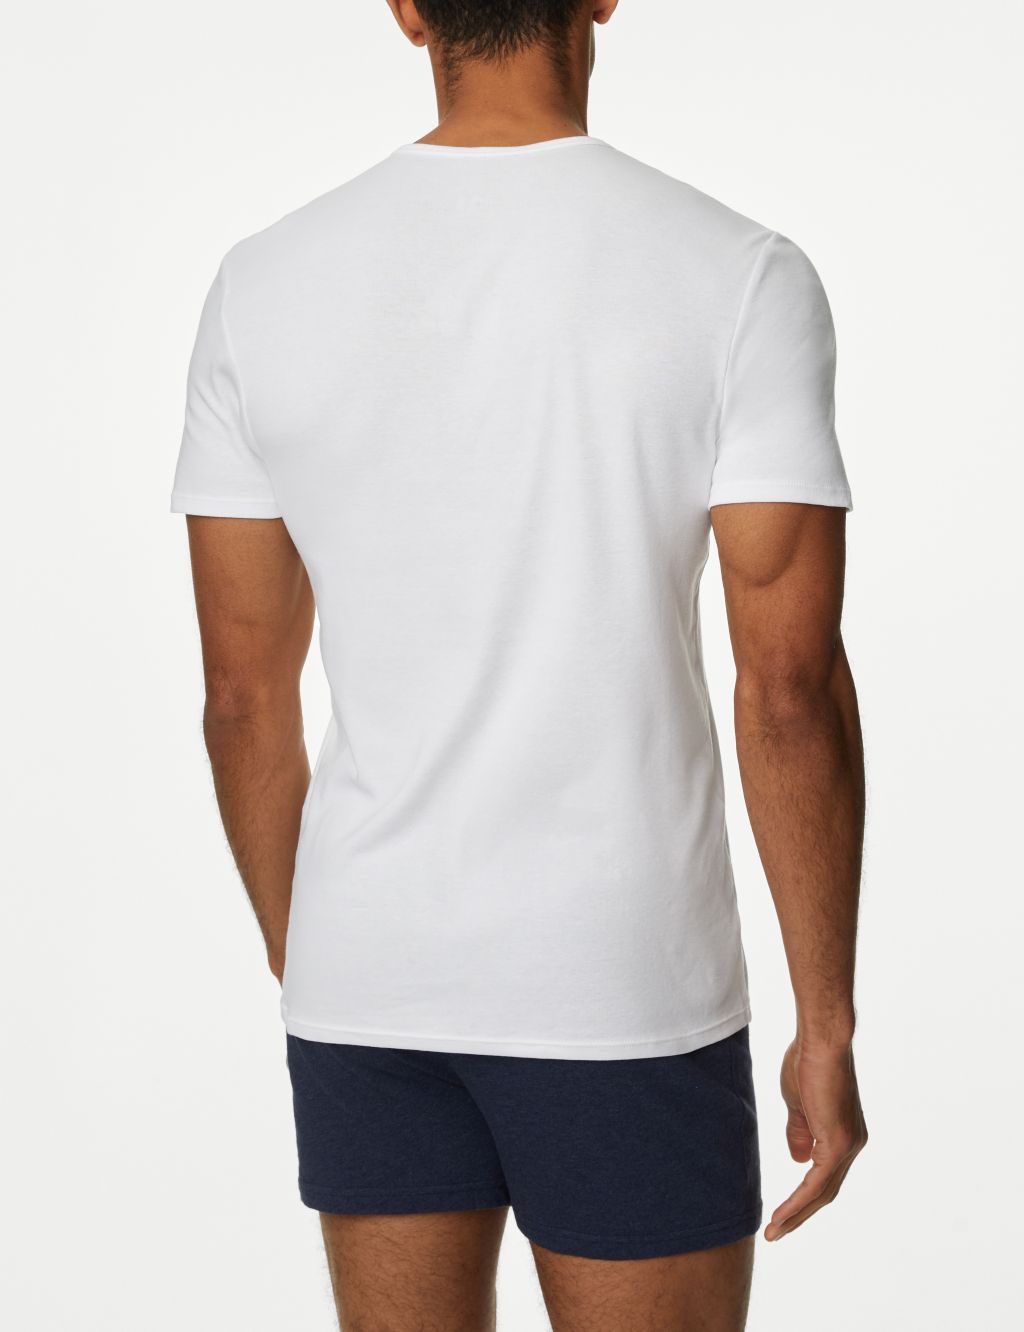 5pk Pure Cotton T-Shirt Vests image 3